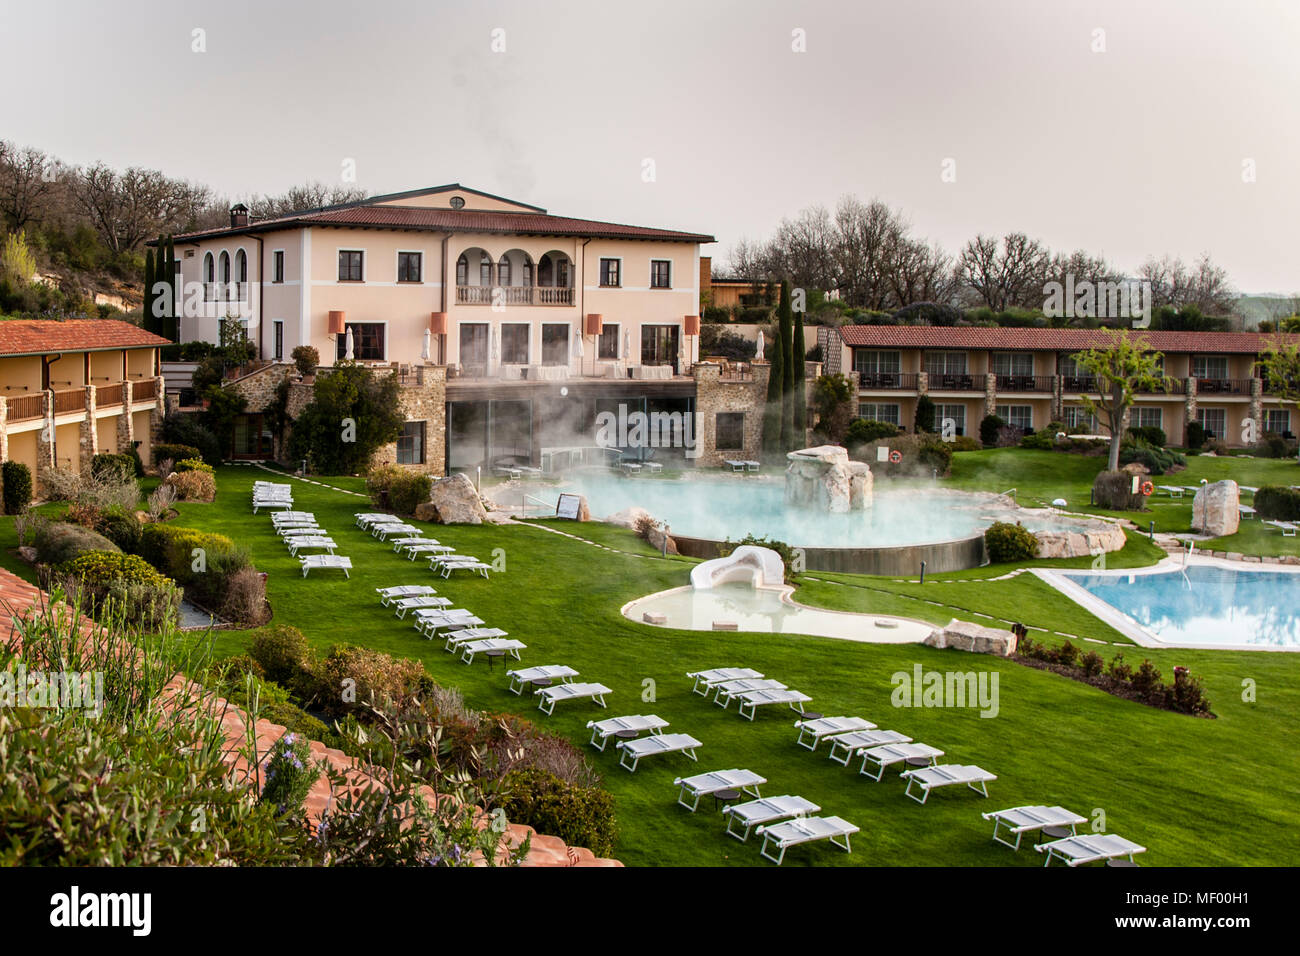 Hotel Adler Thermae, bagno Vignoni, Toscana con piscina termale, Toscana,  Val d'orcia Italia, Patrimonio dell'Umanità dell'UNESCO. La casa principale  nello stile di una villa romana. Su entrambi i lati si estendono le